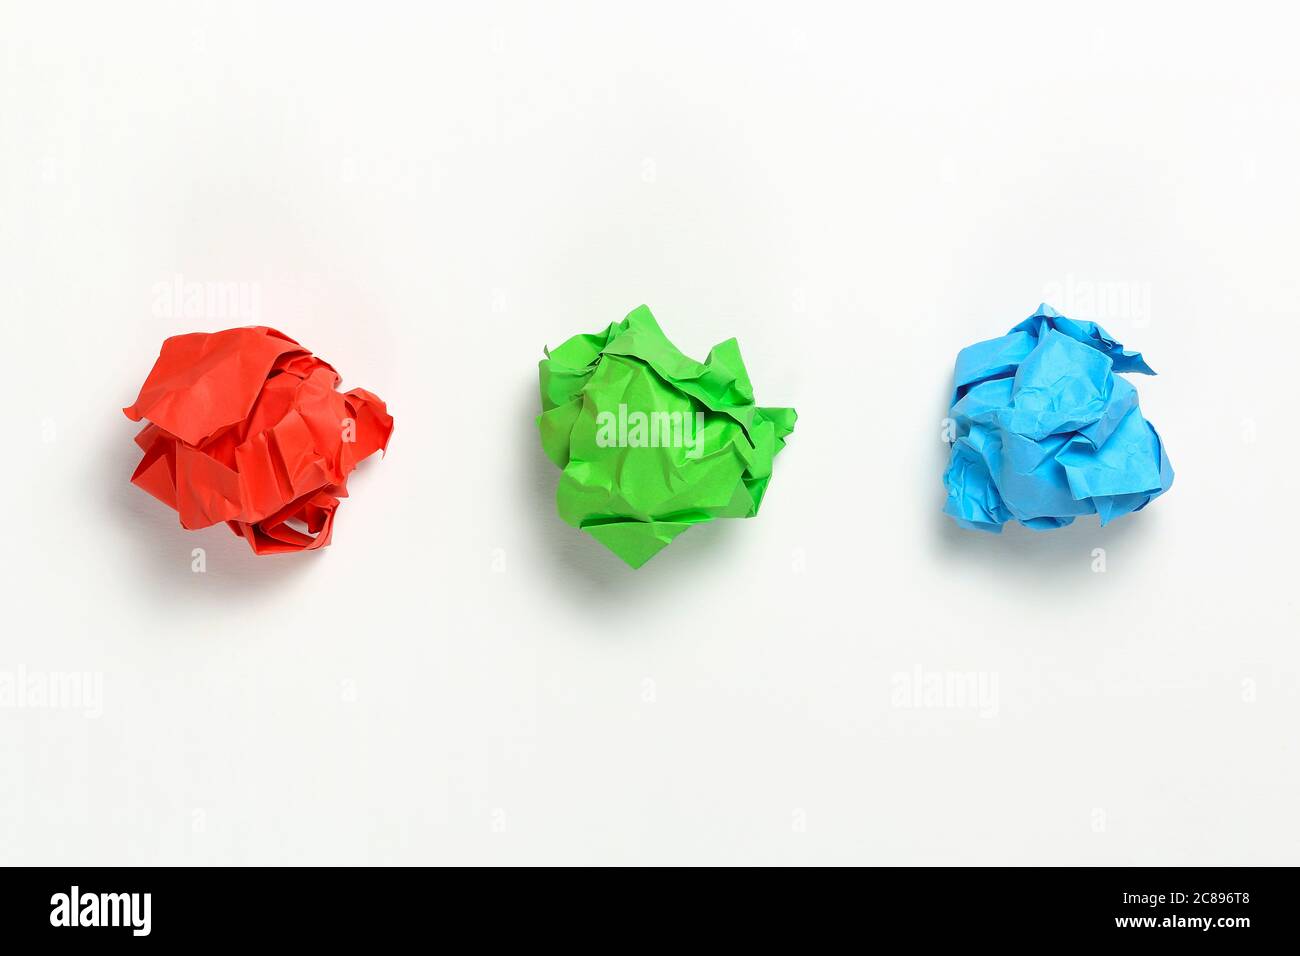 boules de papier rouge, vert et bleu froissés sur une surface blanche Banque D'Images